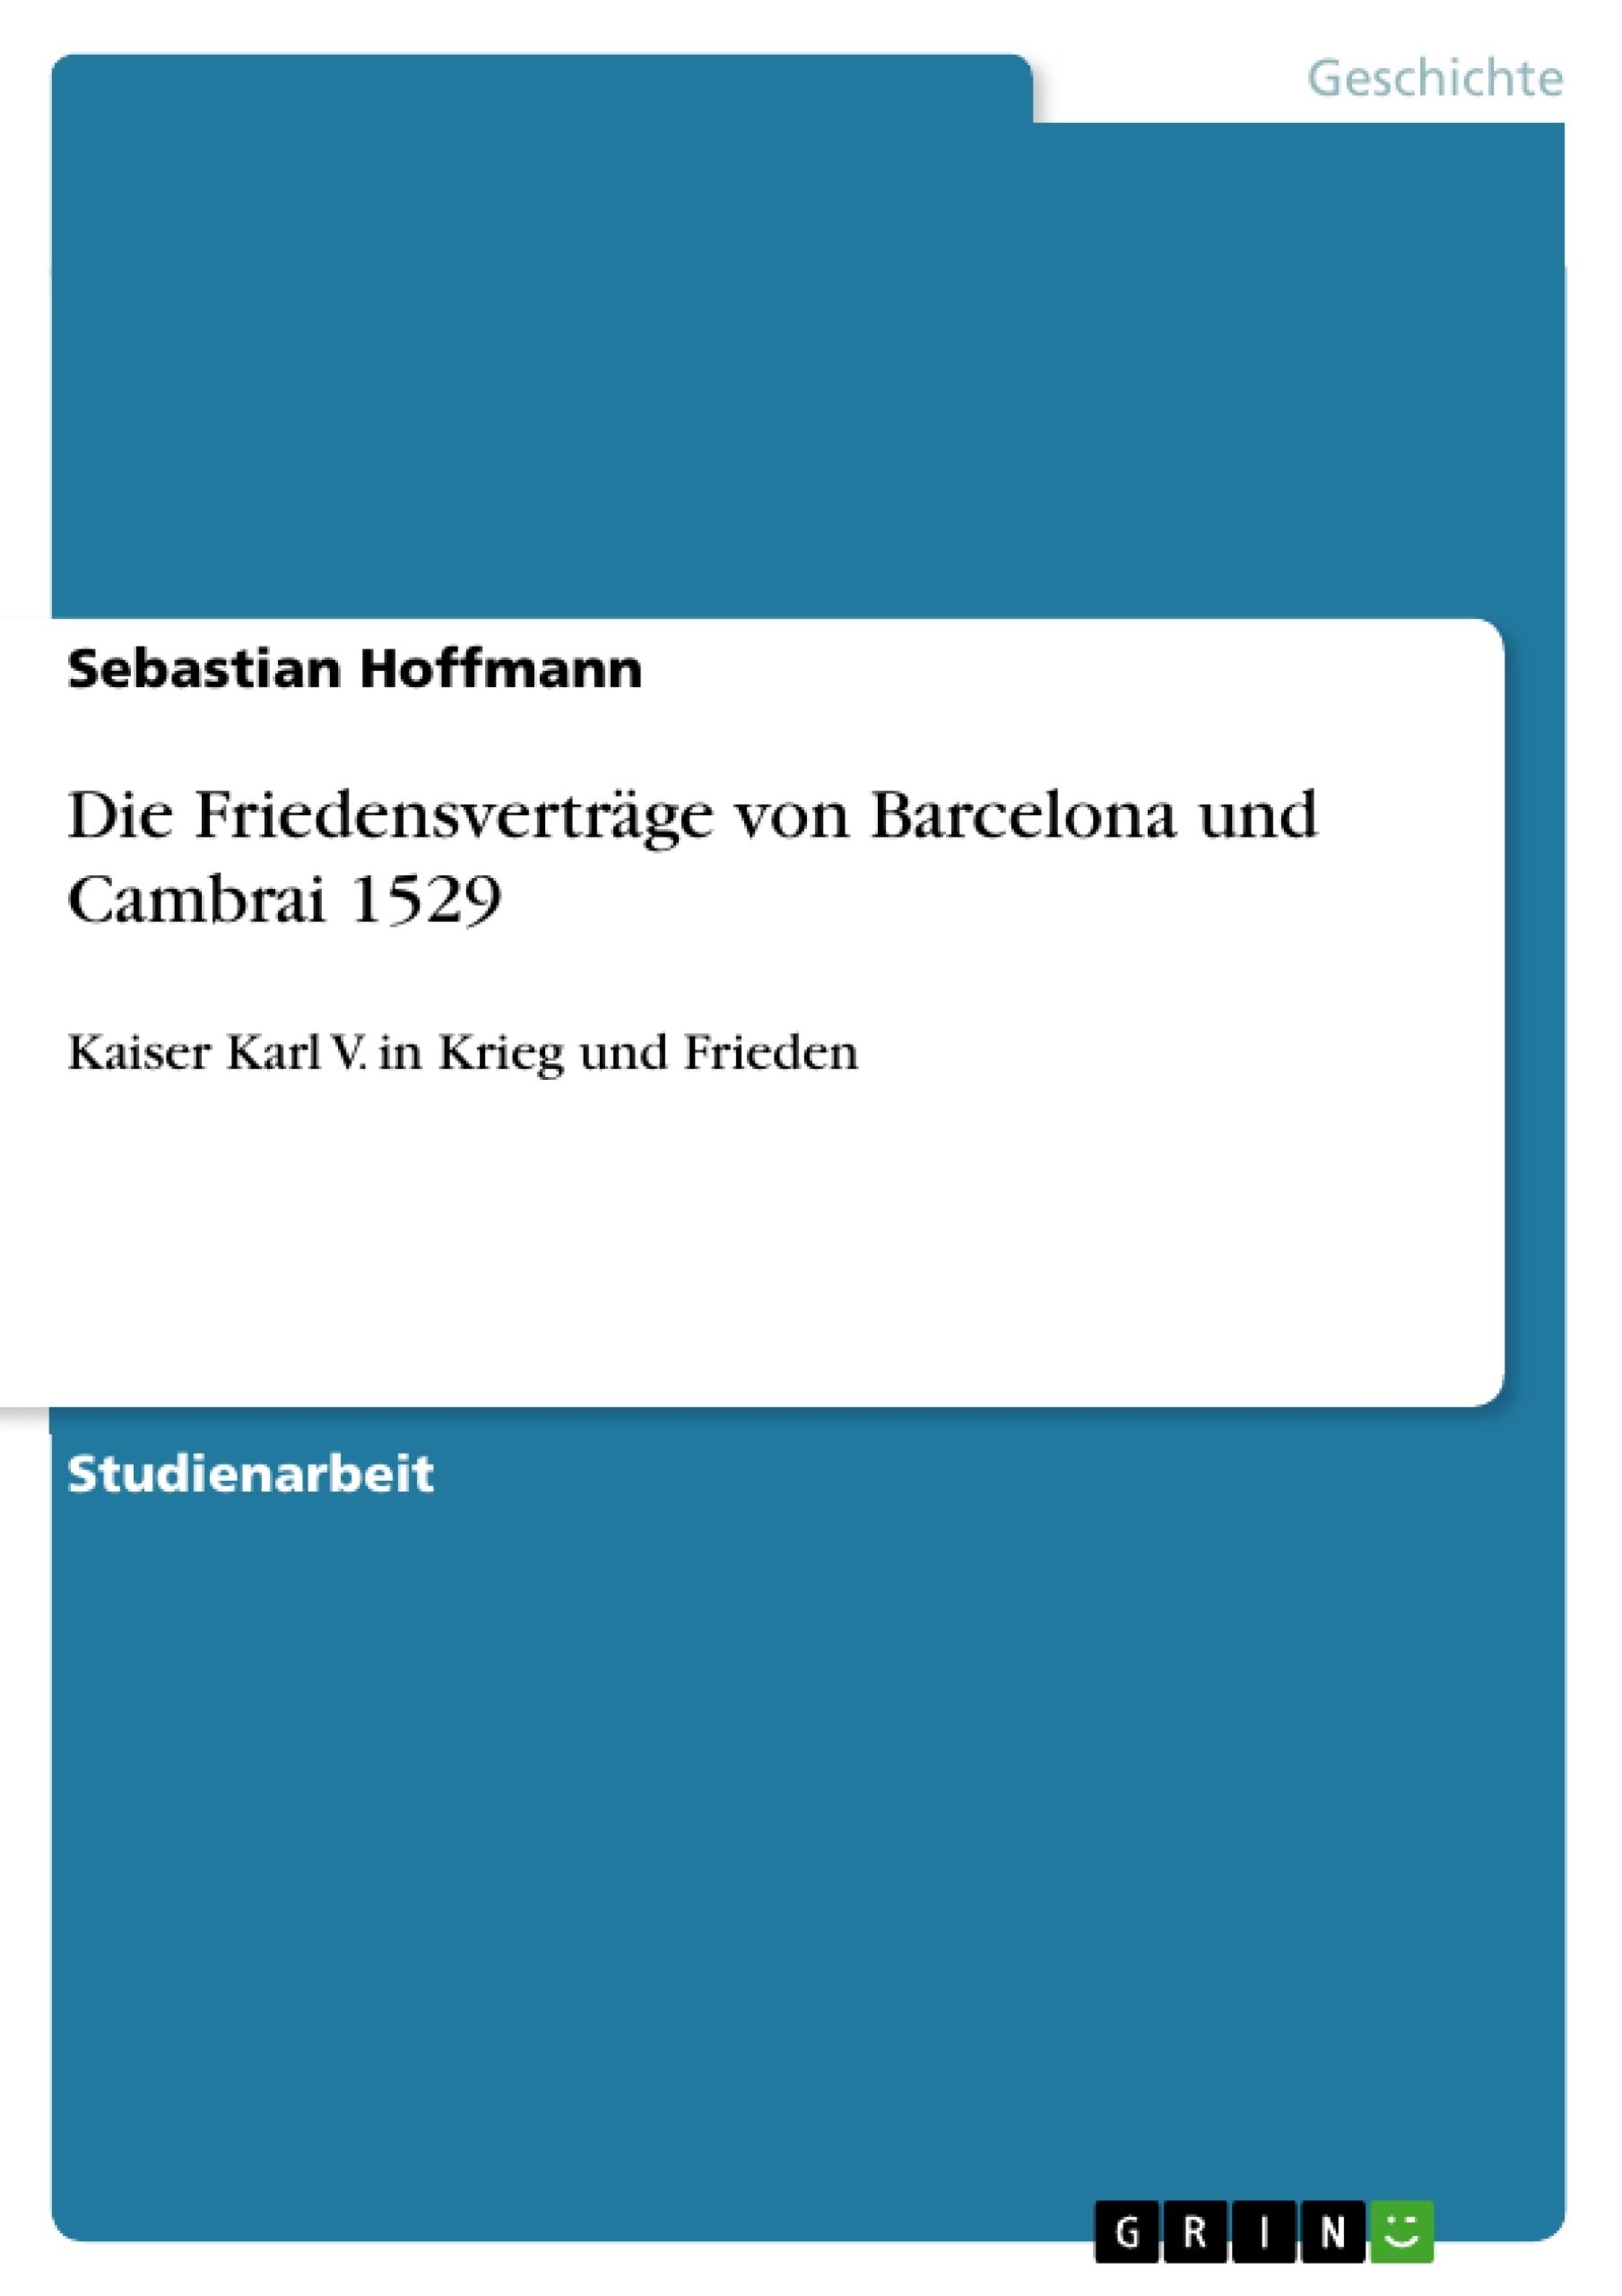 Title: Die Friedensverträge von Barcelona und Cambrai 1529